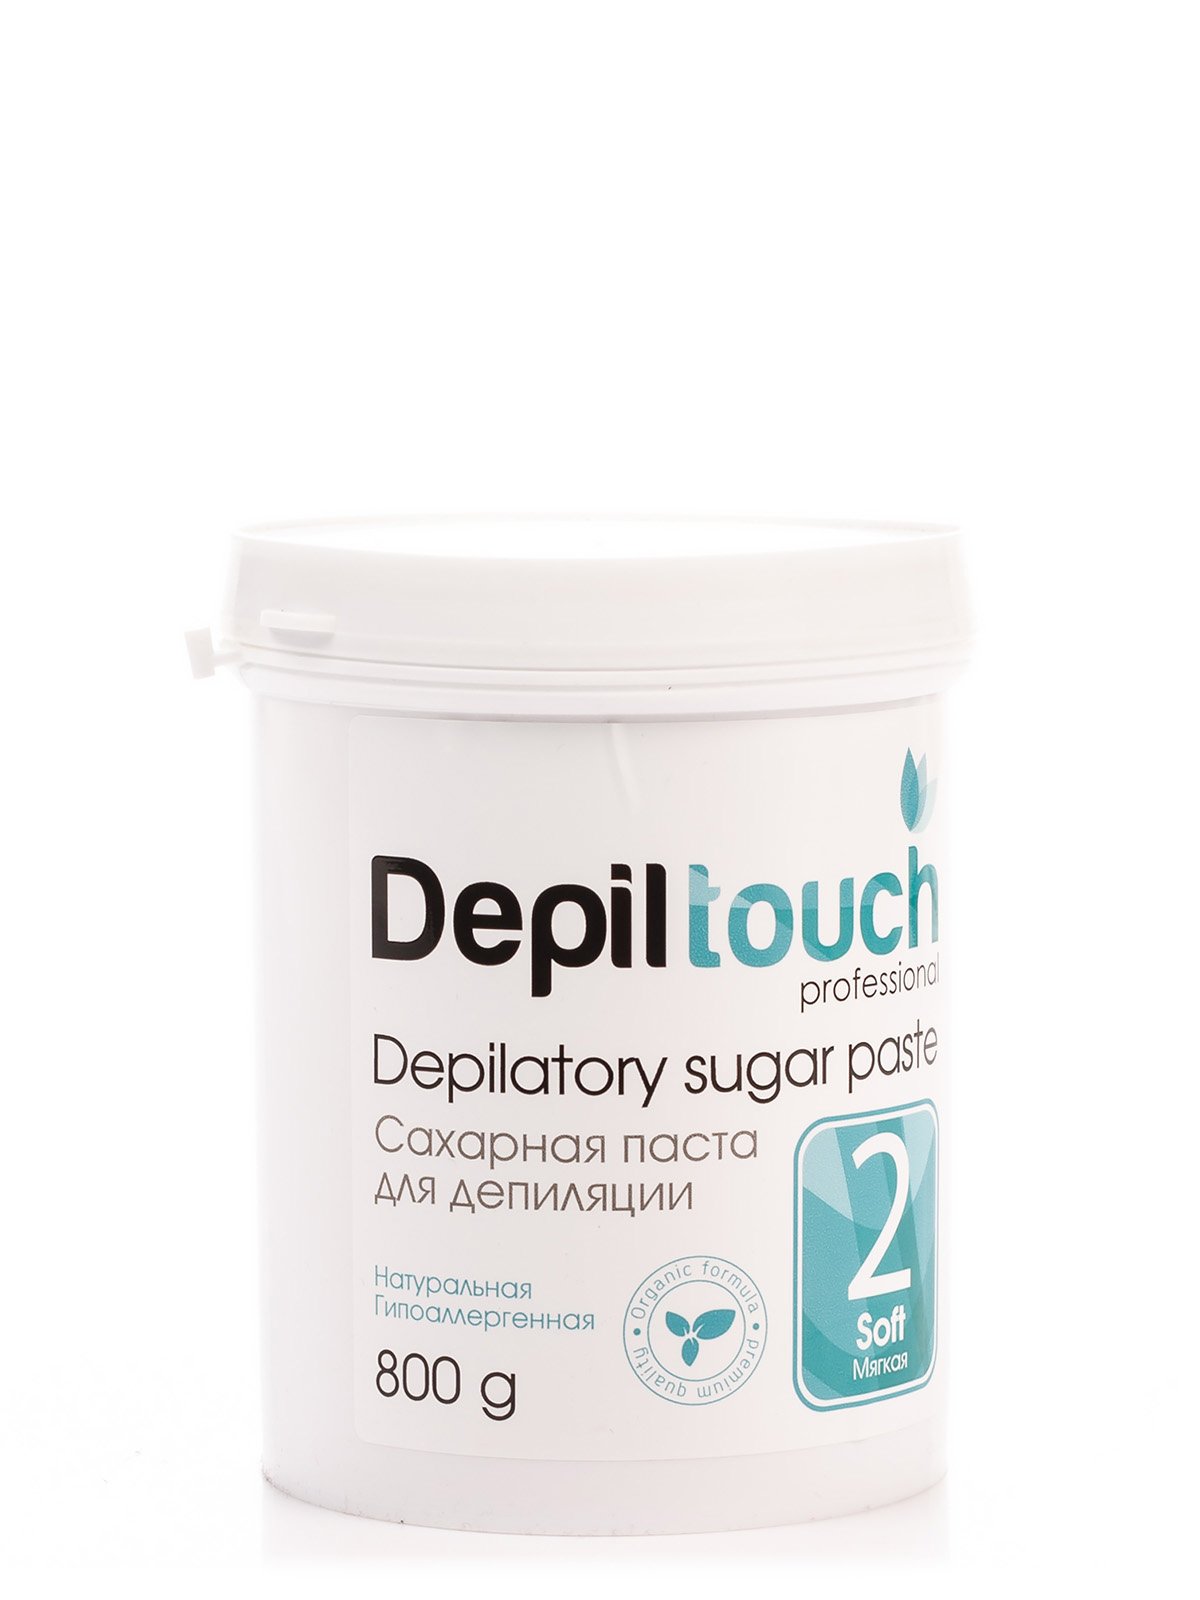 Паста цукрова для депіляції м'яка Depiltouch professional (800 г) | 3963240